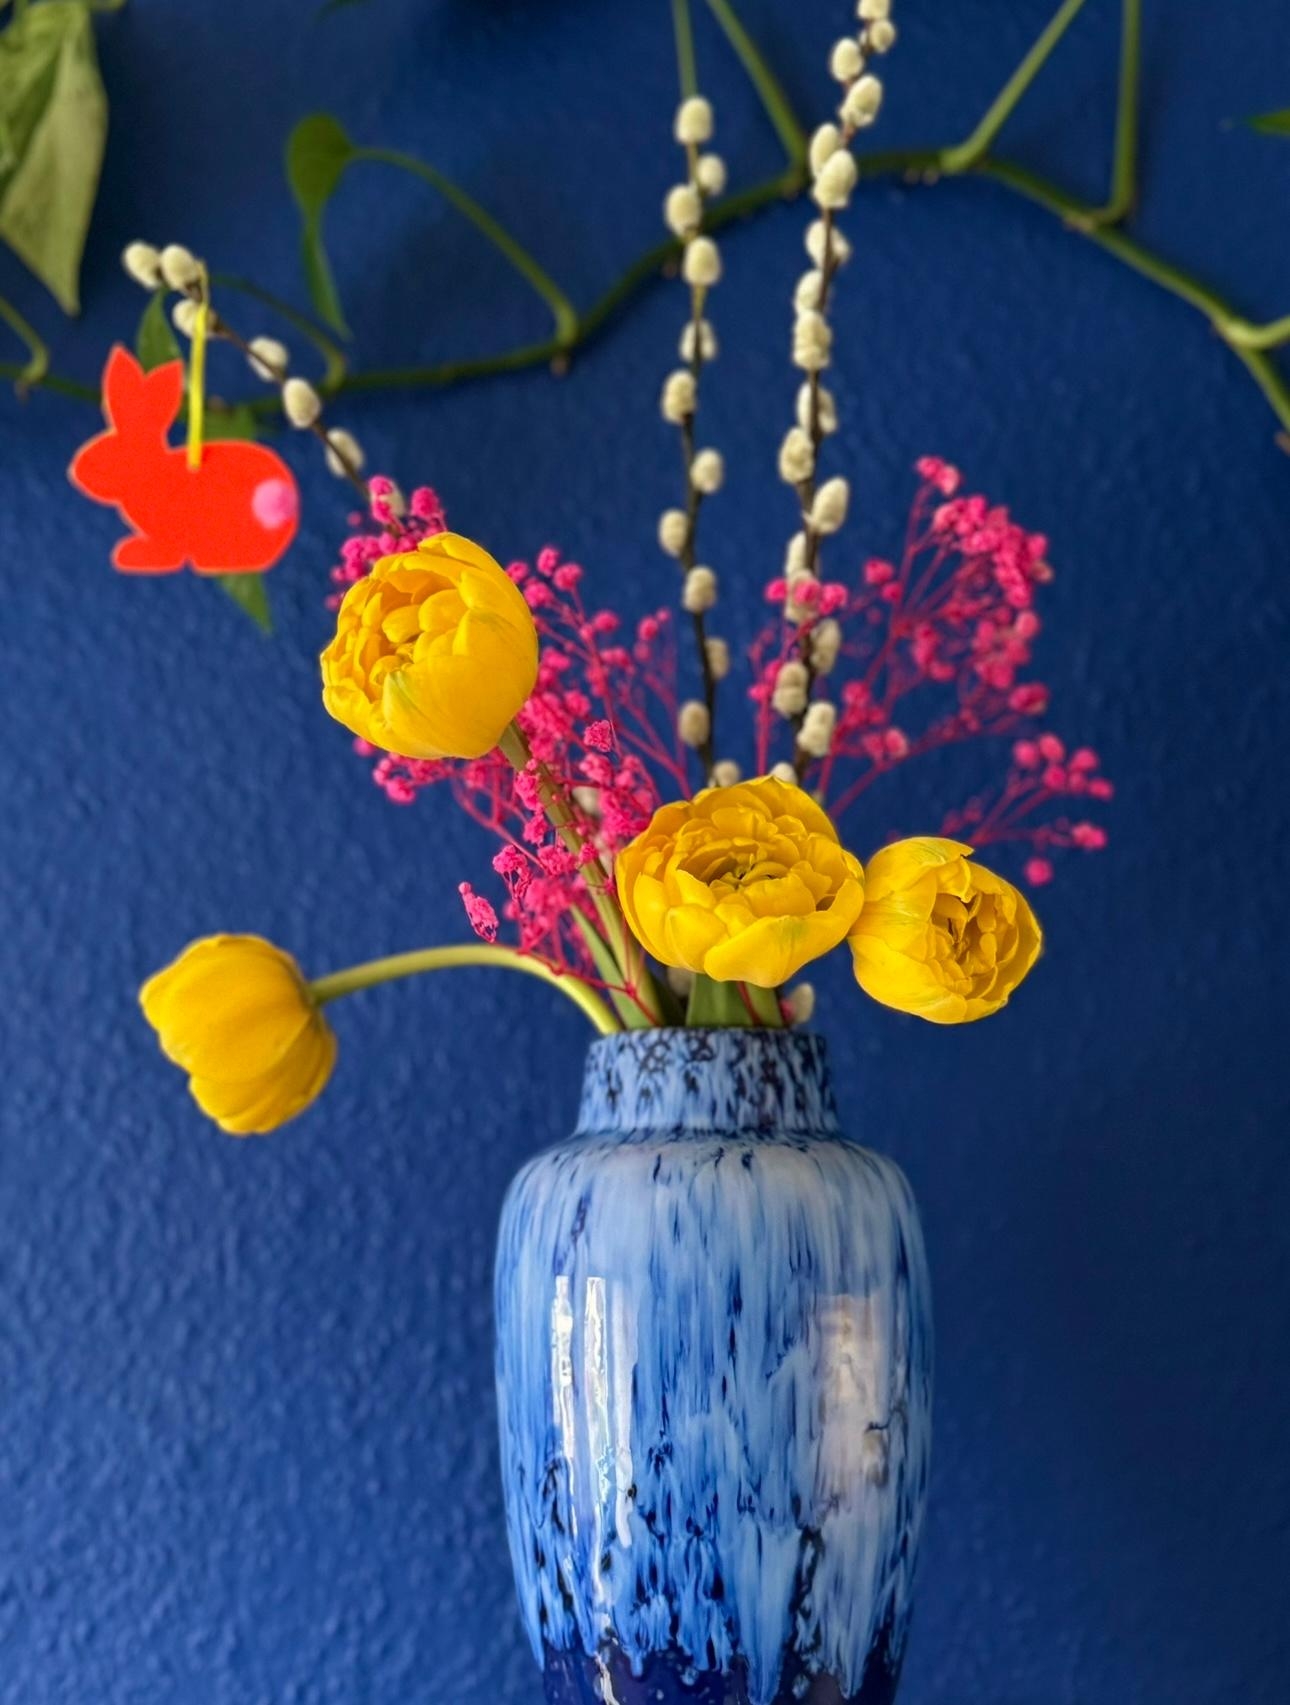 #Froheostern #Osterstrauch in der #Küche 💙 #Wandfarbe #Vintage #Vase  #Secondhand #Diy #Osterdeko #Colorbomb #Hasi in #Neon 🧡 #Bunteostern